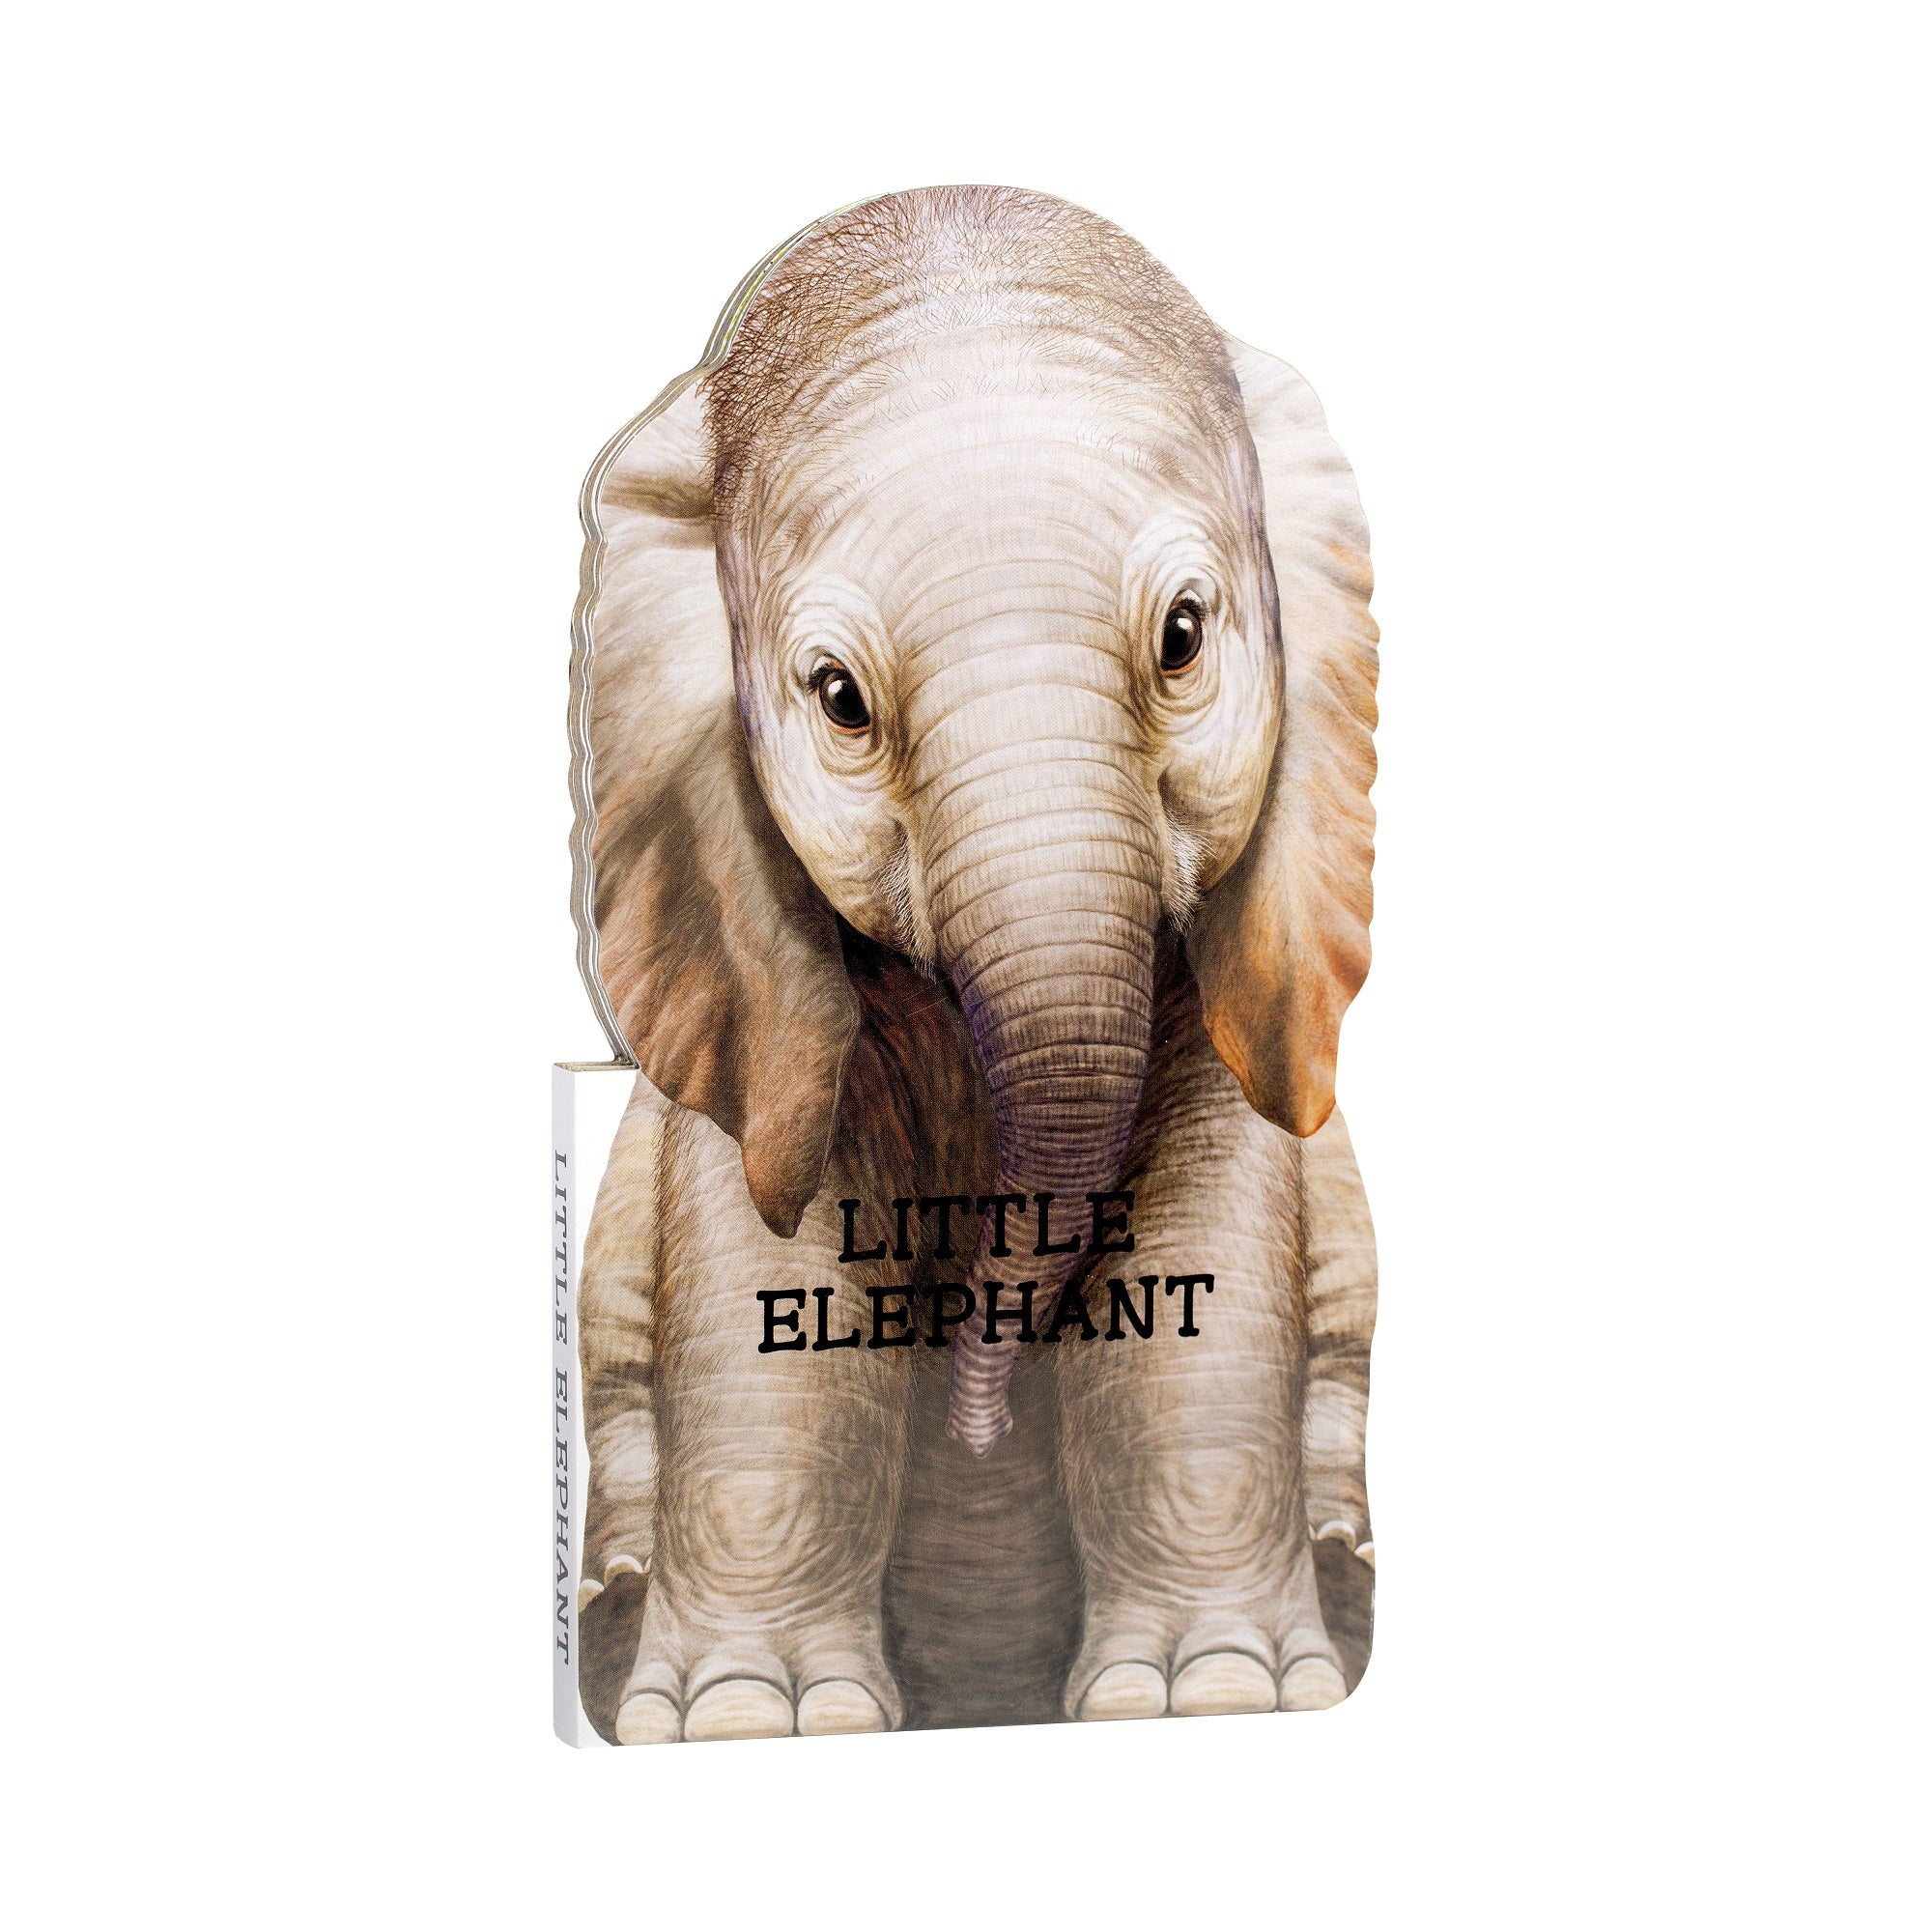 Little Elephant Board Book